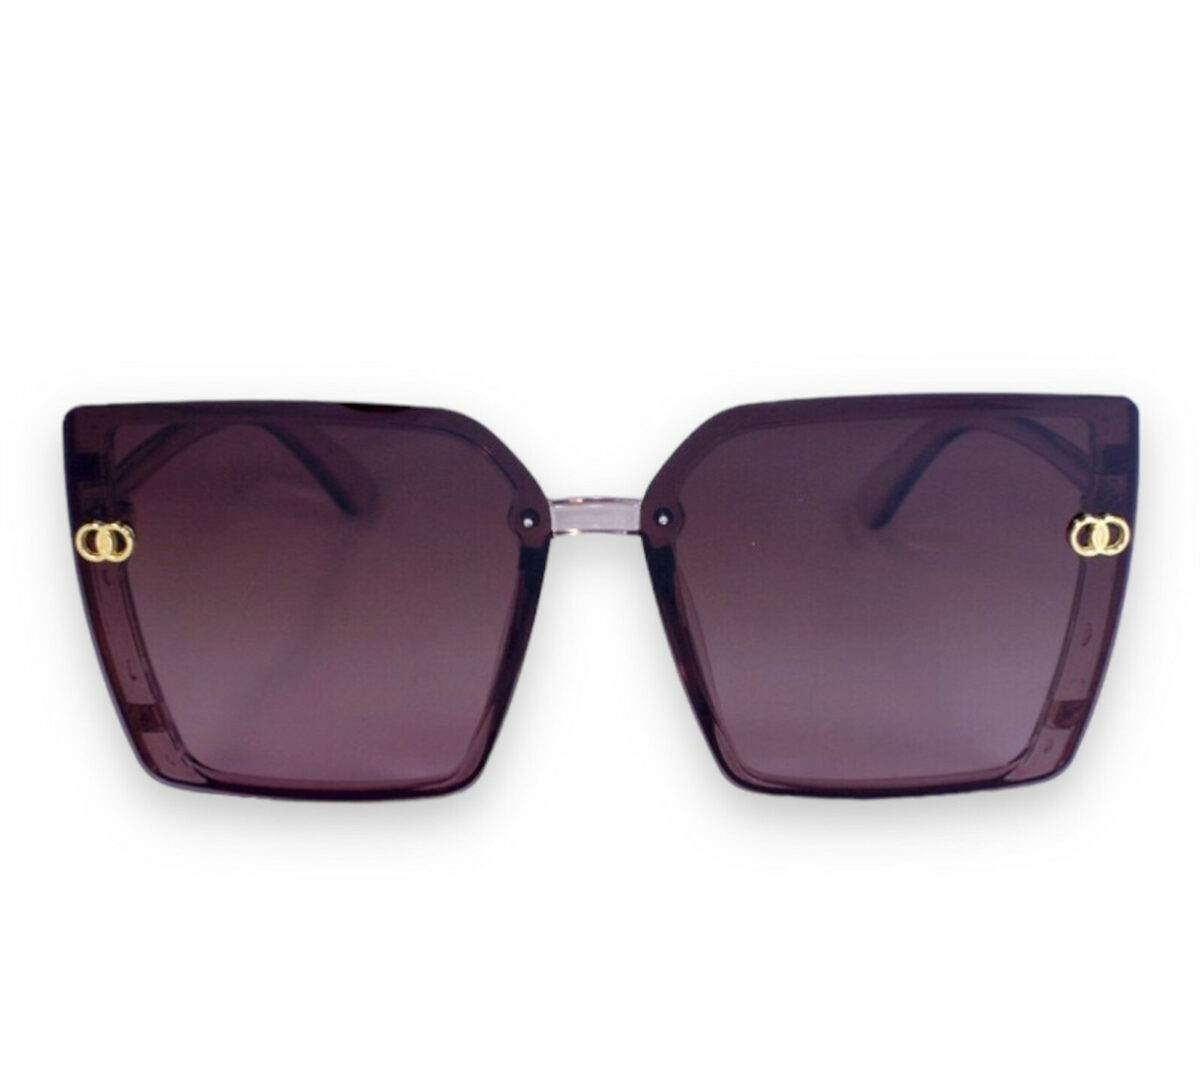 Жіночі сонцезахисні окуляри polarized P2955-3 topseason Cardeo